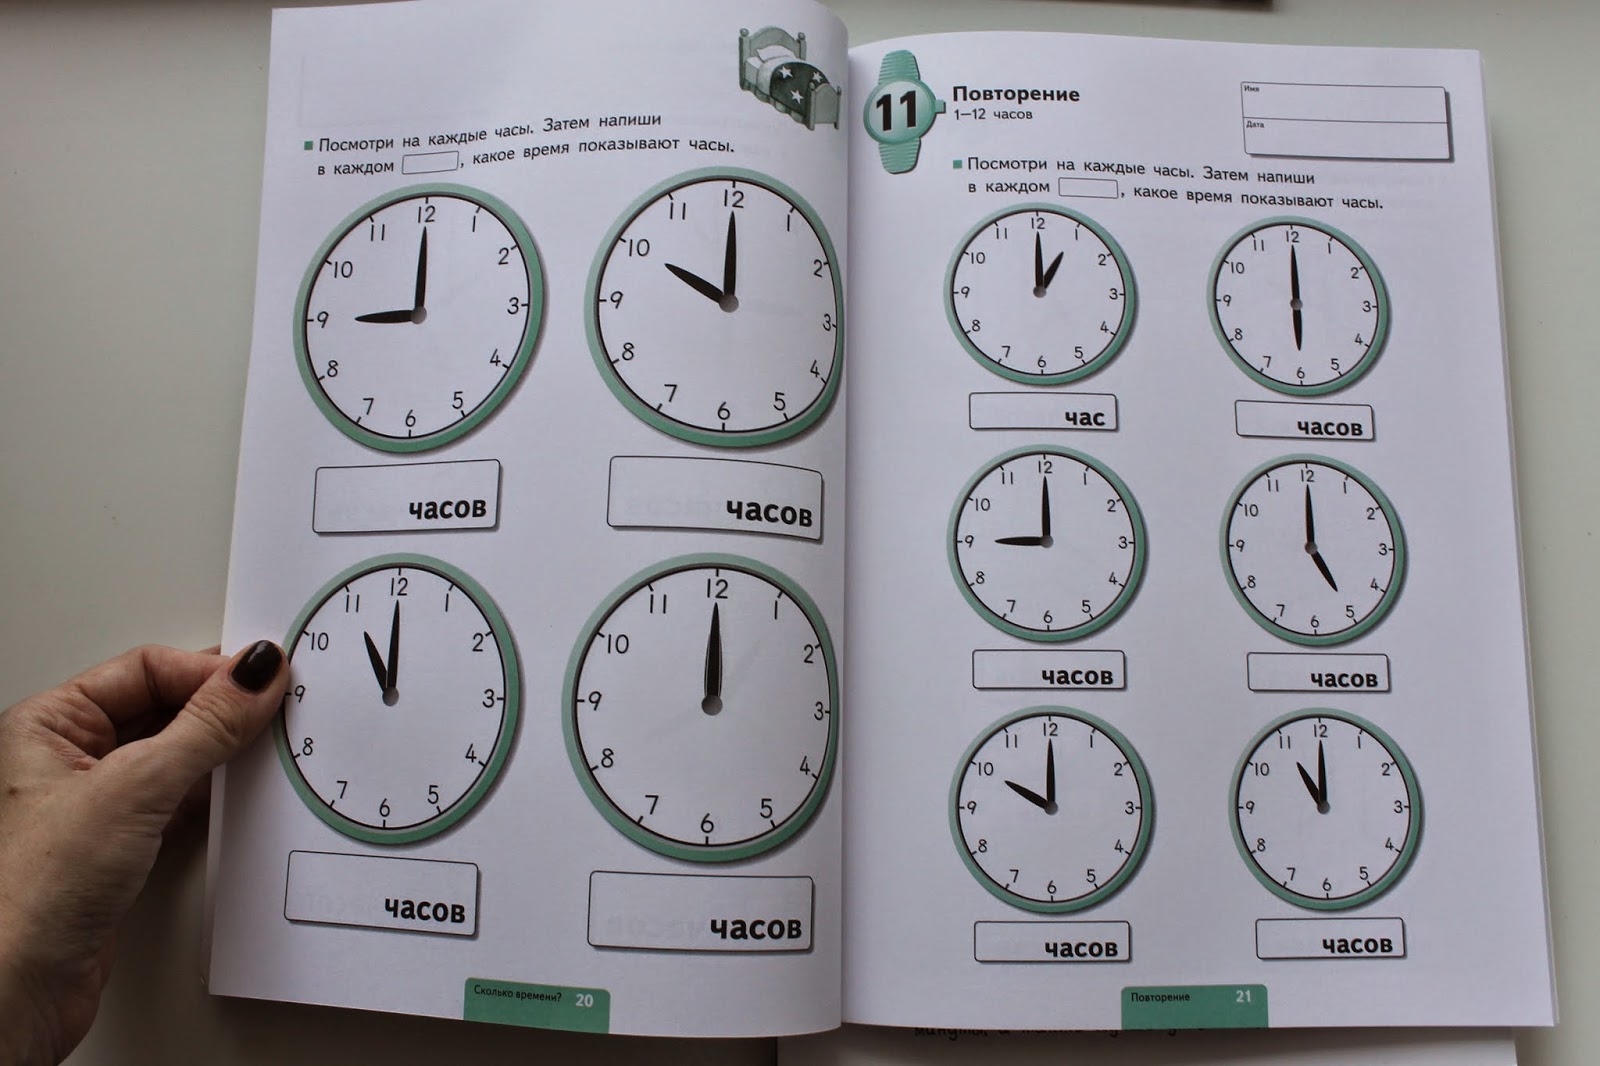 01 01 на часах. Часы для повторения. Повторение часов. Какое время показывают часы. Учимся определять время час и полчаса.